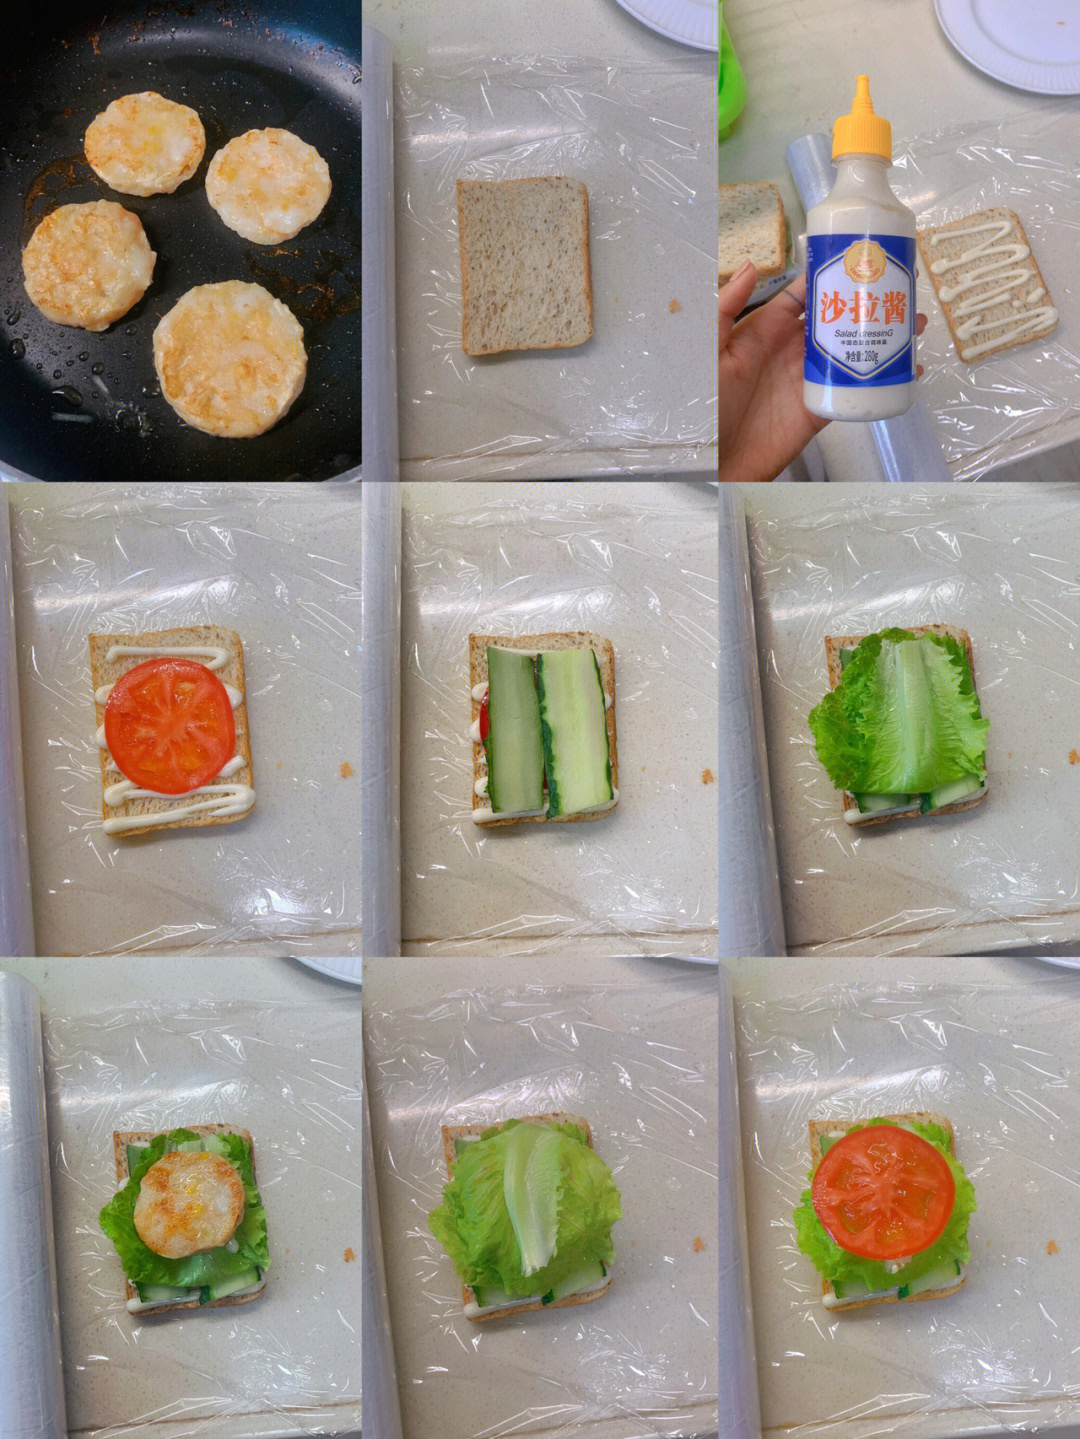 三明治怎么包起来图解图片